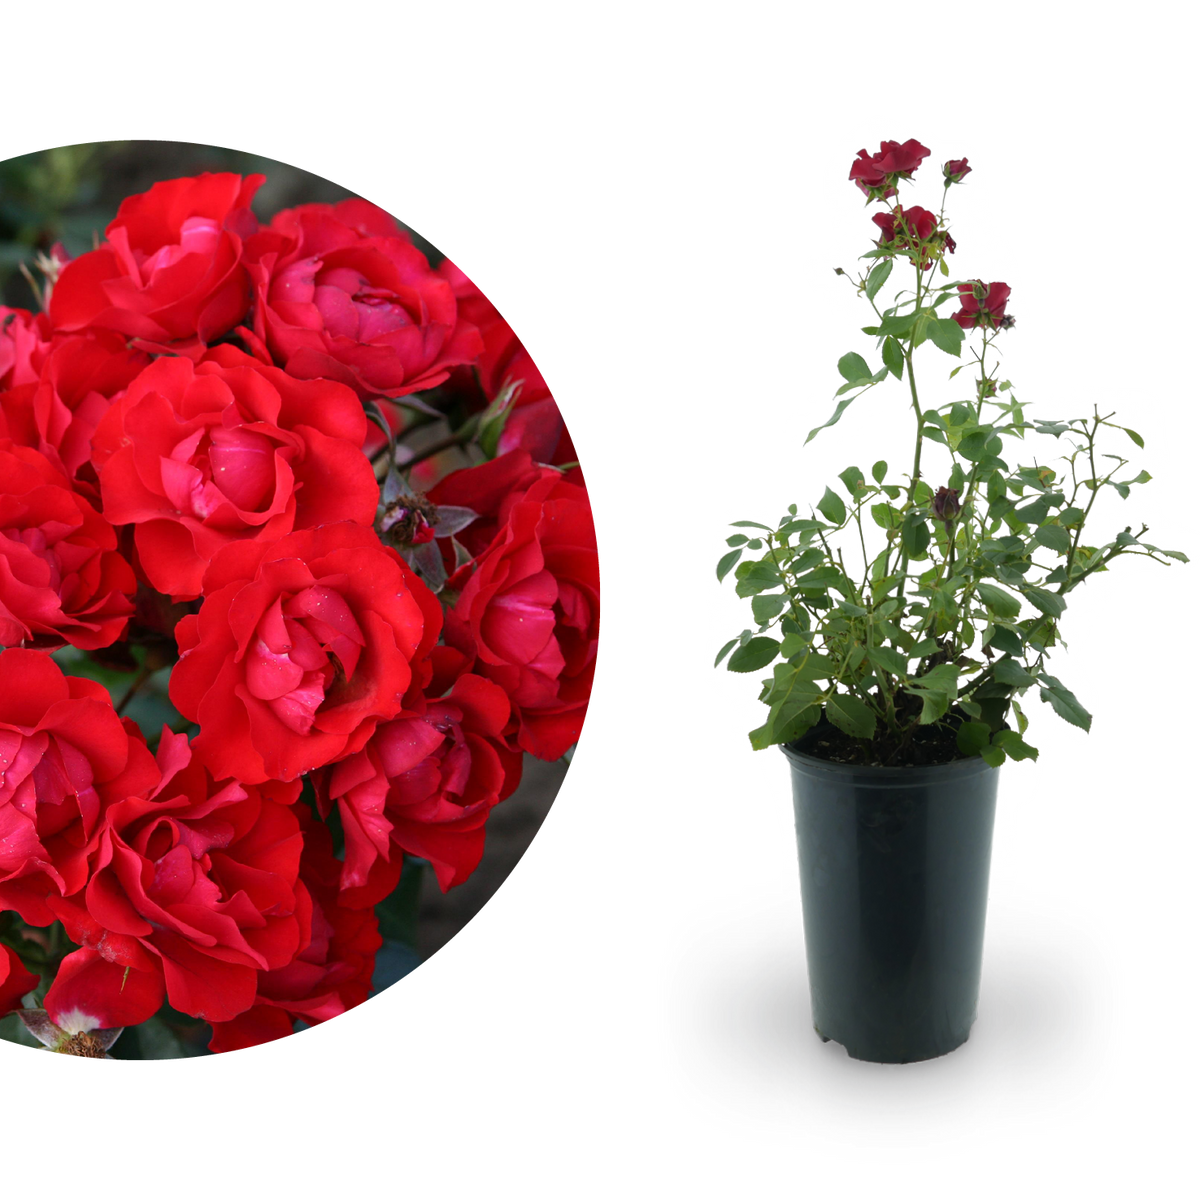 Beetrose 'Black Forest Rose'® Rot